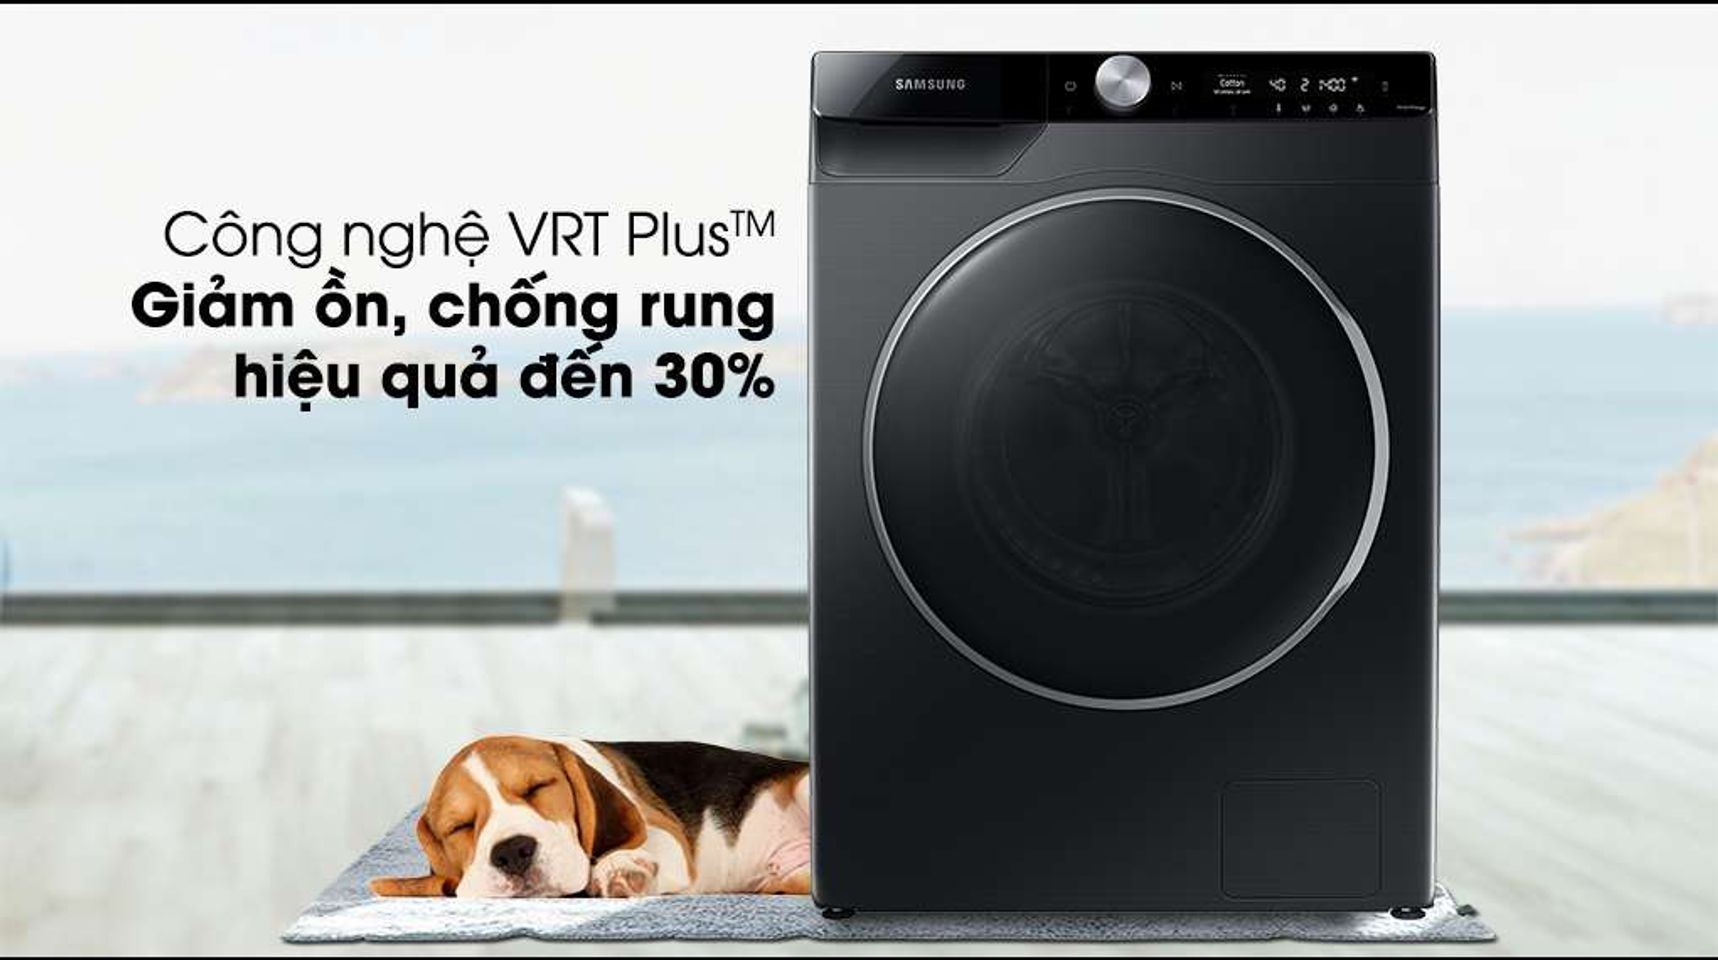 Máy giặt Samsung Inverter 10kg WW10TP44DSB/SV-Giảm thiểu độ ồn, chống rung tốt với công nghệ VRT Plus™